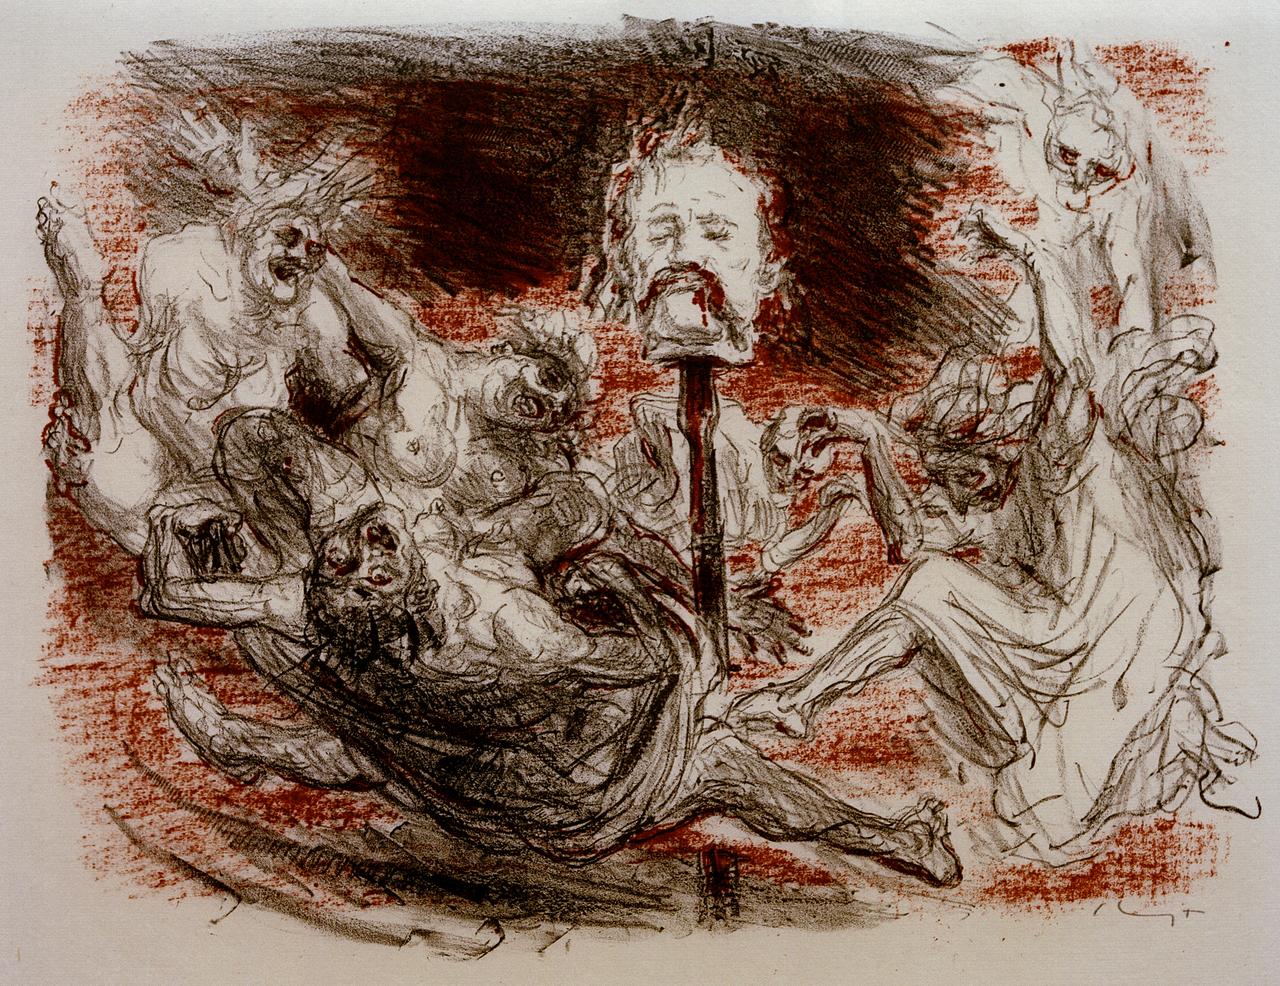 Shakespeare, "Macbeth": Illustrationen des impressionistischen Malers und Grafikers Max Slevogt, herausgegeben 1927 vom Verlag Bruno Cassirer.